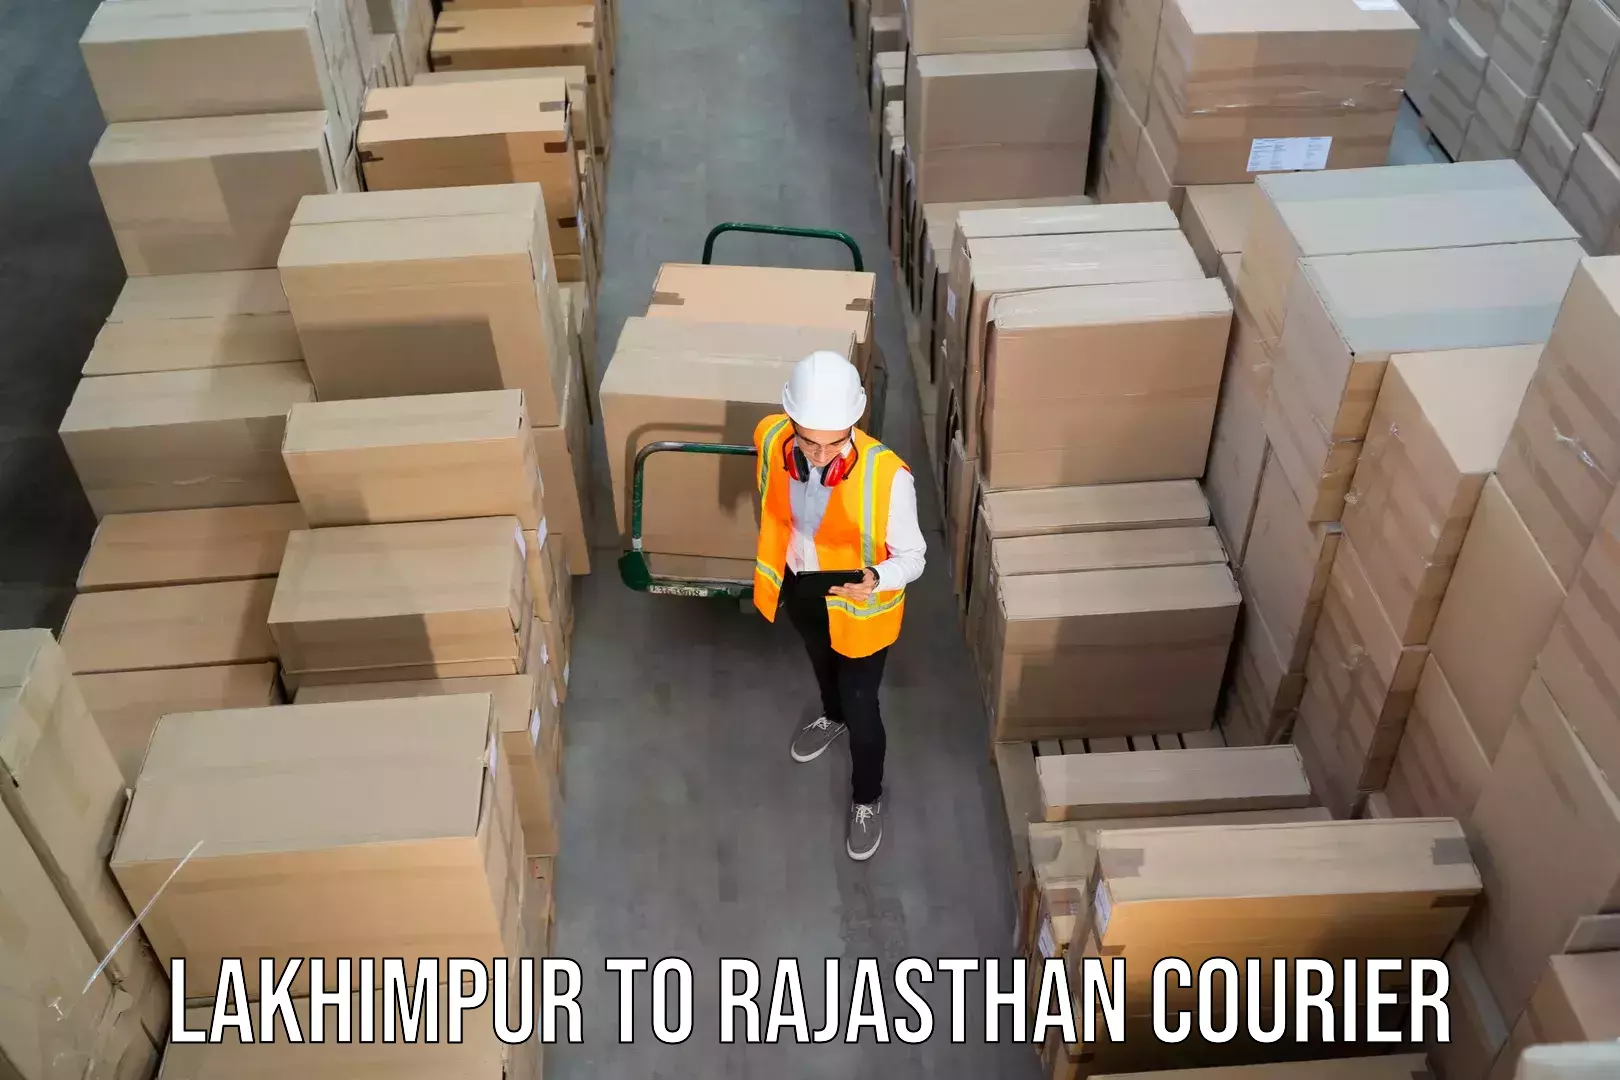 24/7 shipping services Lakhimpur to Pratapgarh Rajasthan